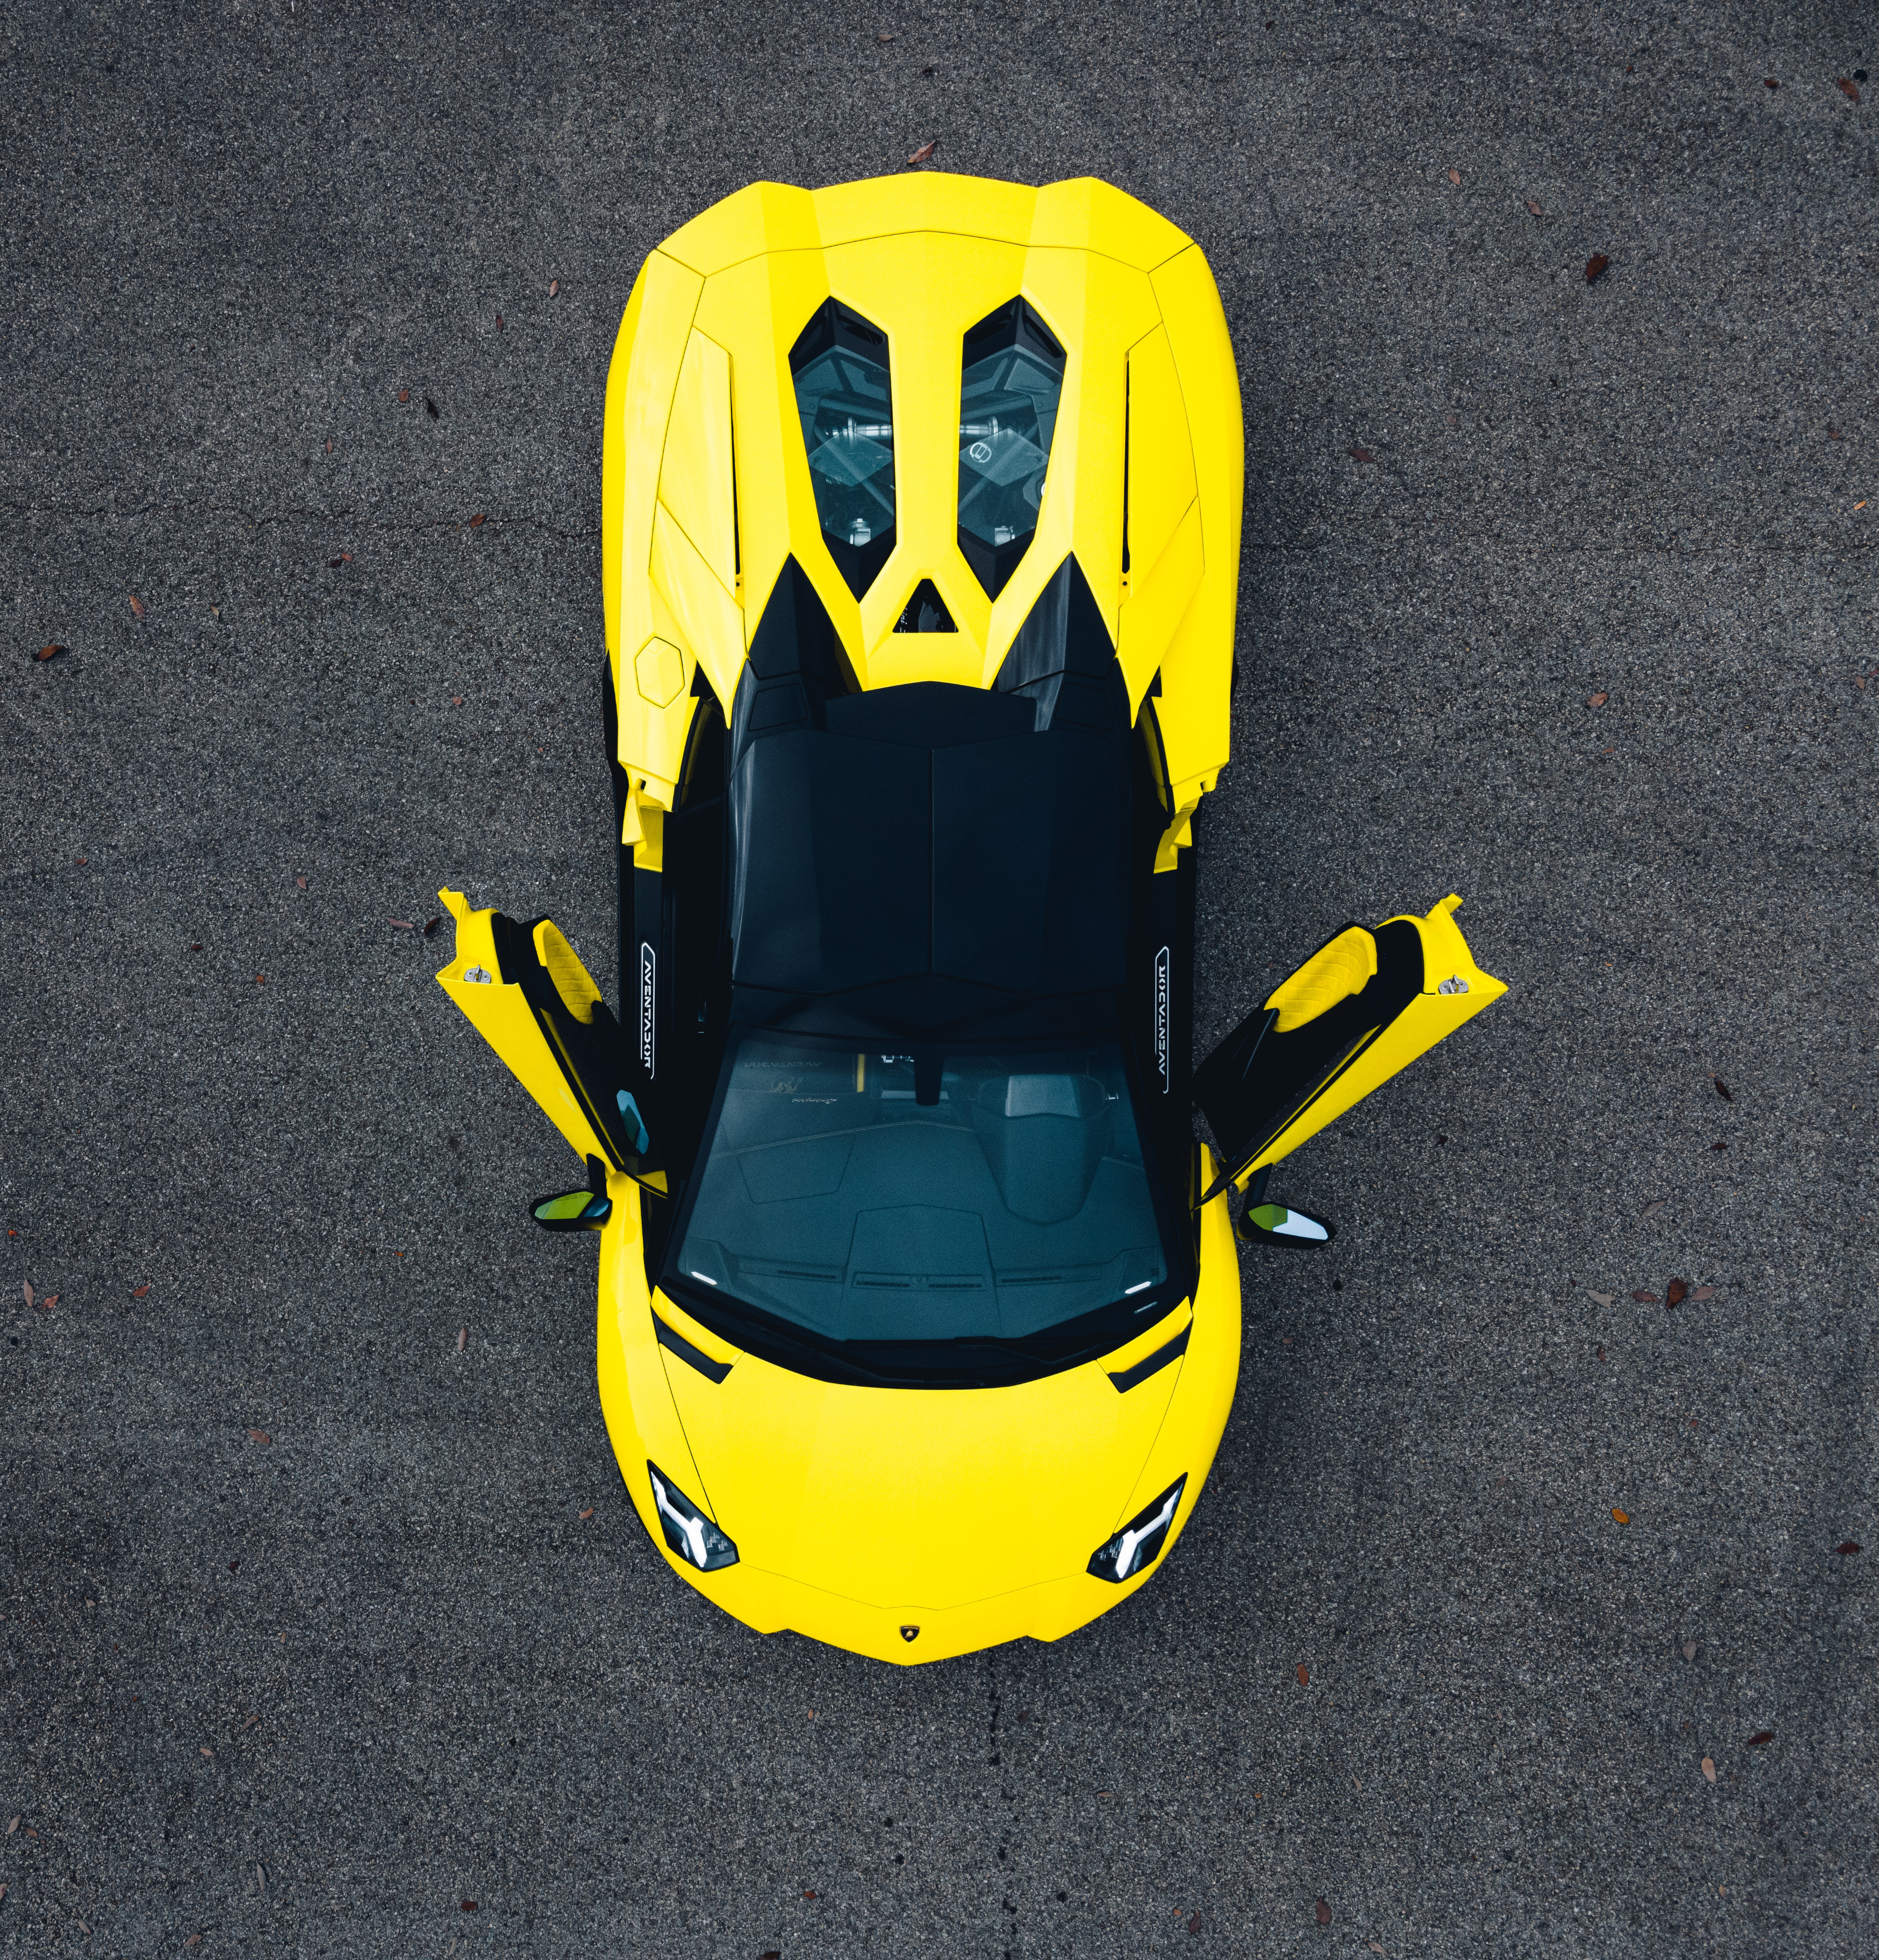 lamborghini aventador, sports car, sports, lamborghini, cars, yellow, view from above, car